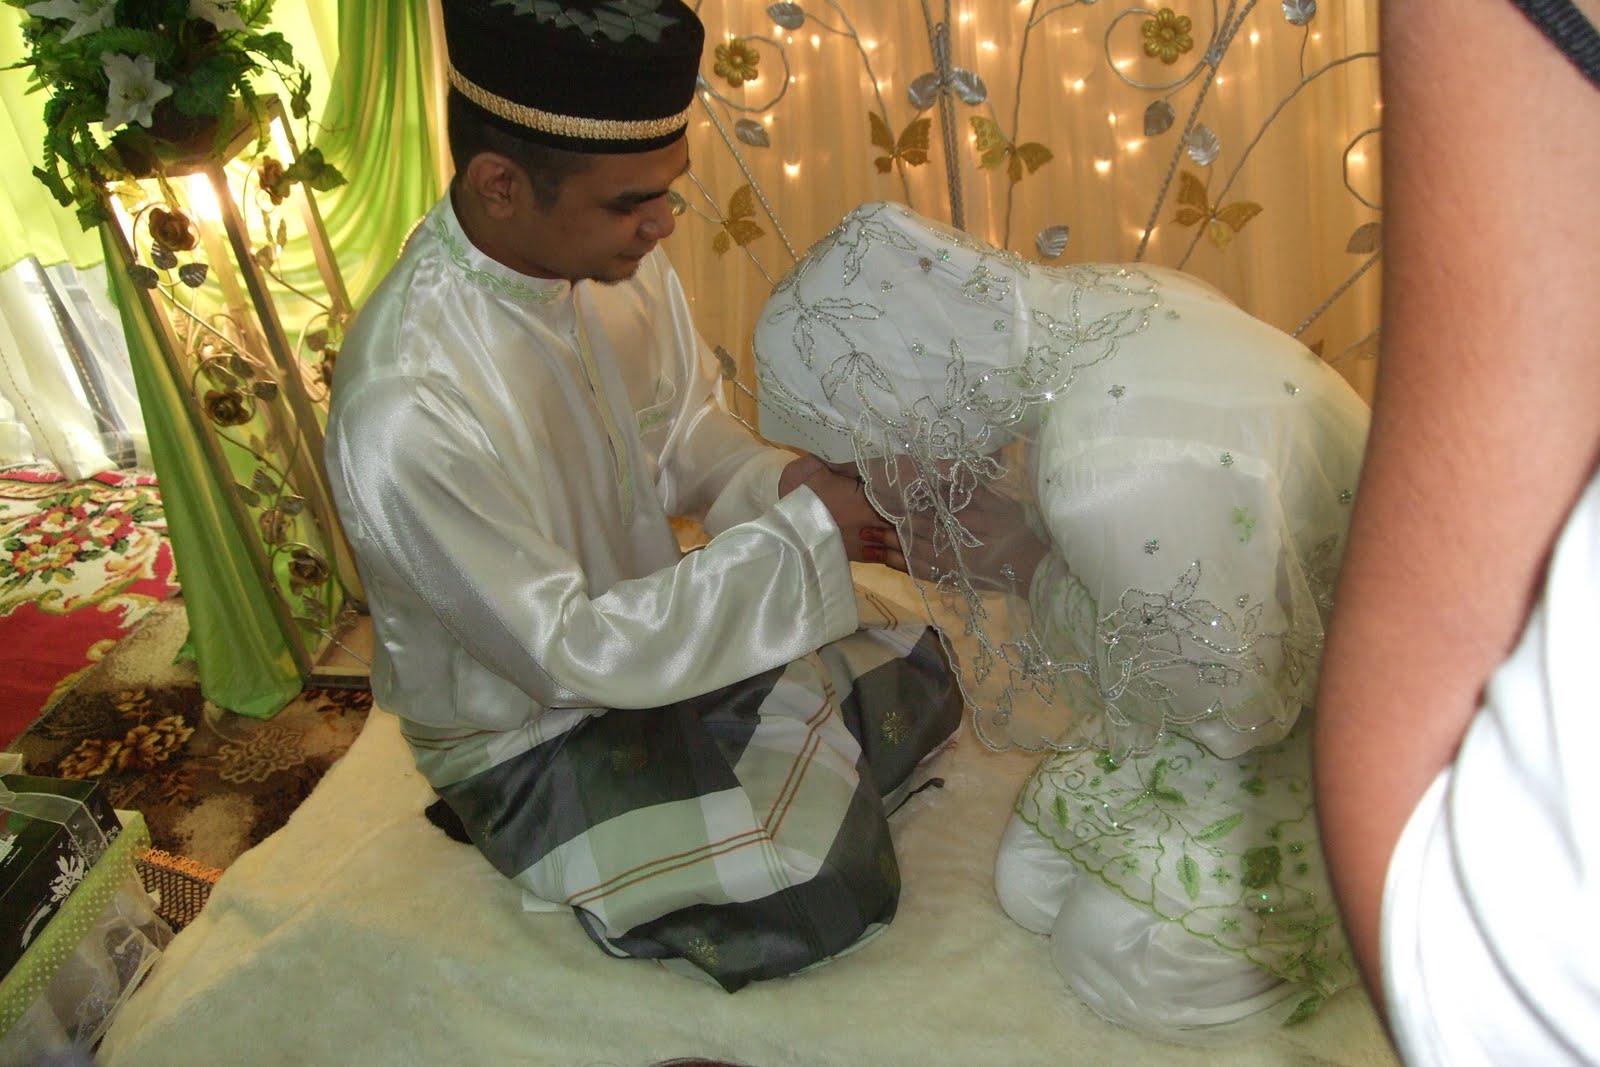 nikah wedding invitation